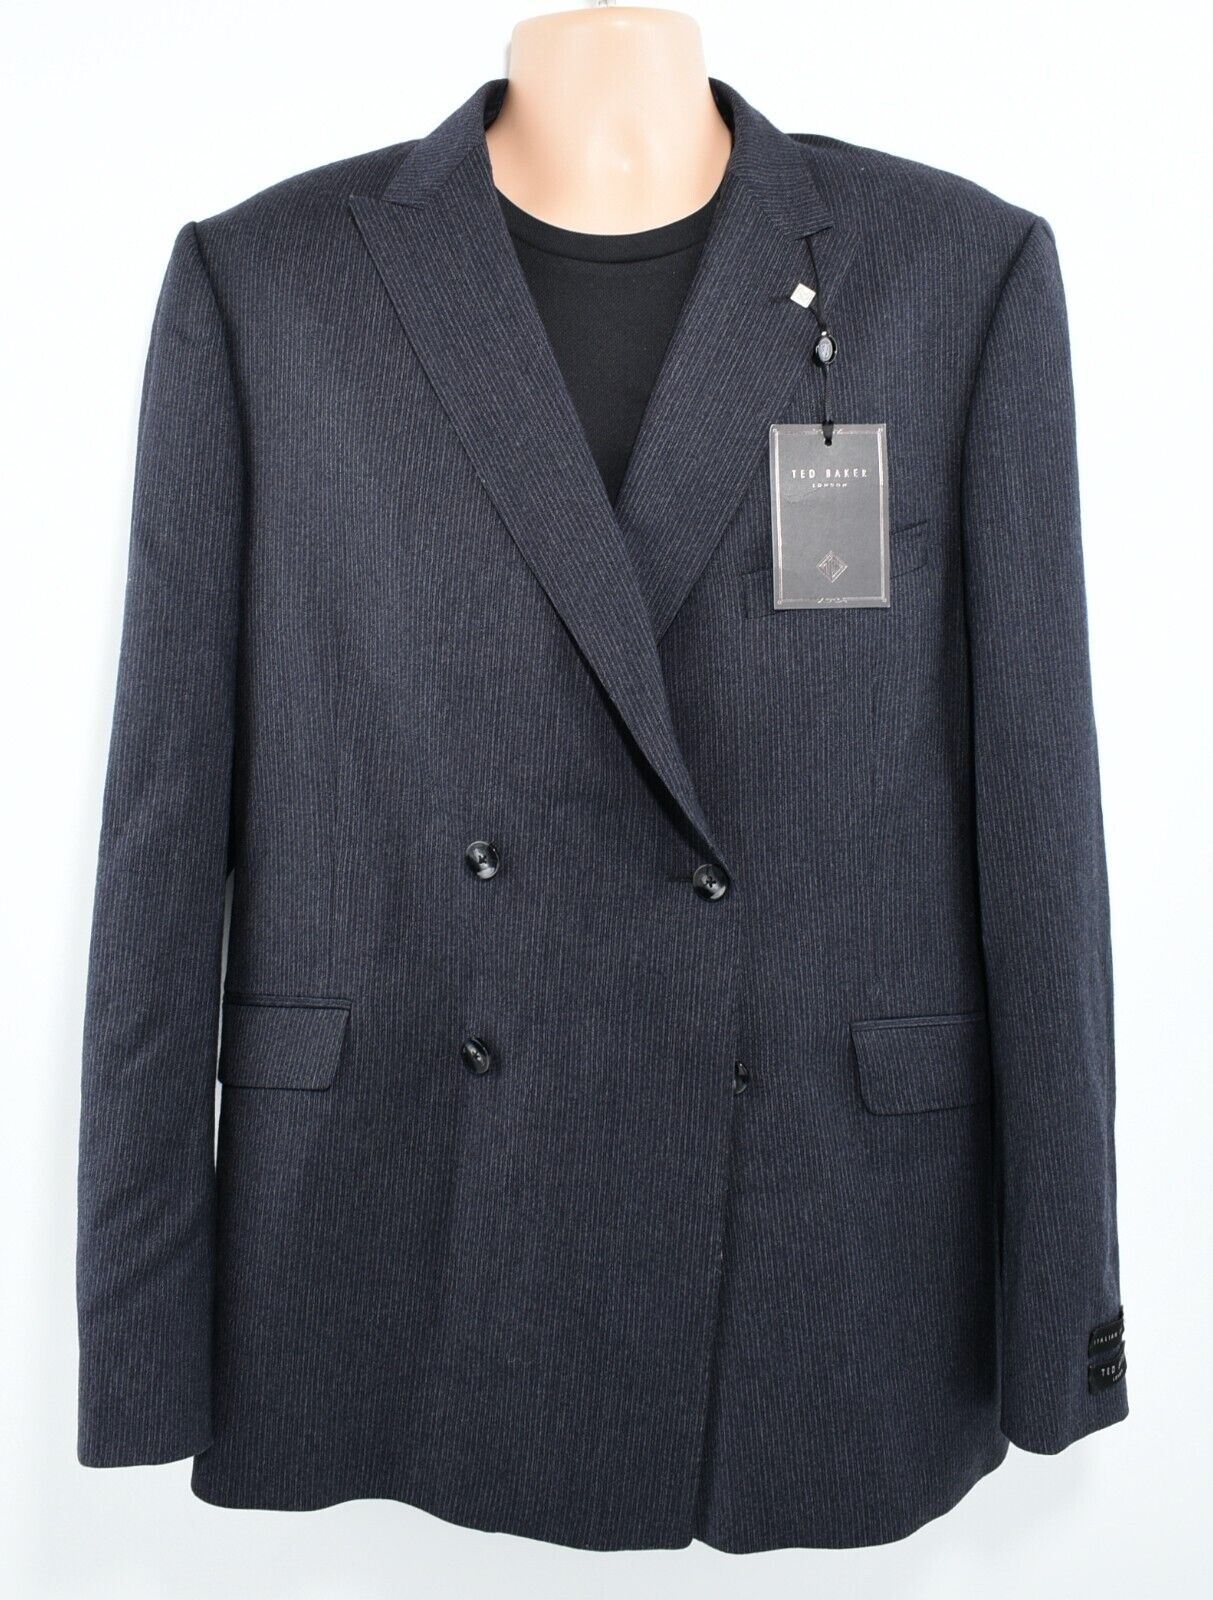 TED BAKER Men's Navy Blue Blazer Jacket Italian Fabric Size UK Large 46R